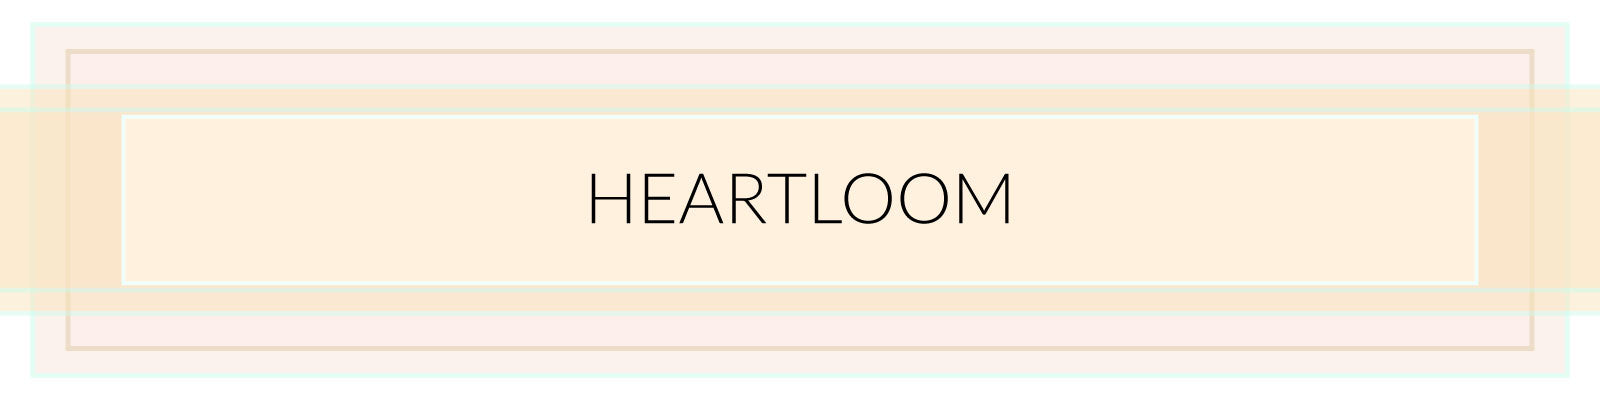 Heartloom